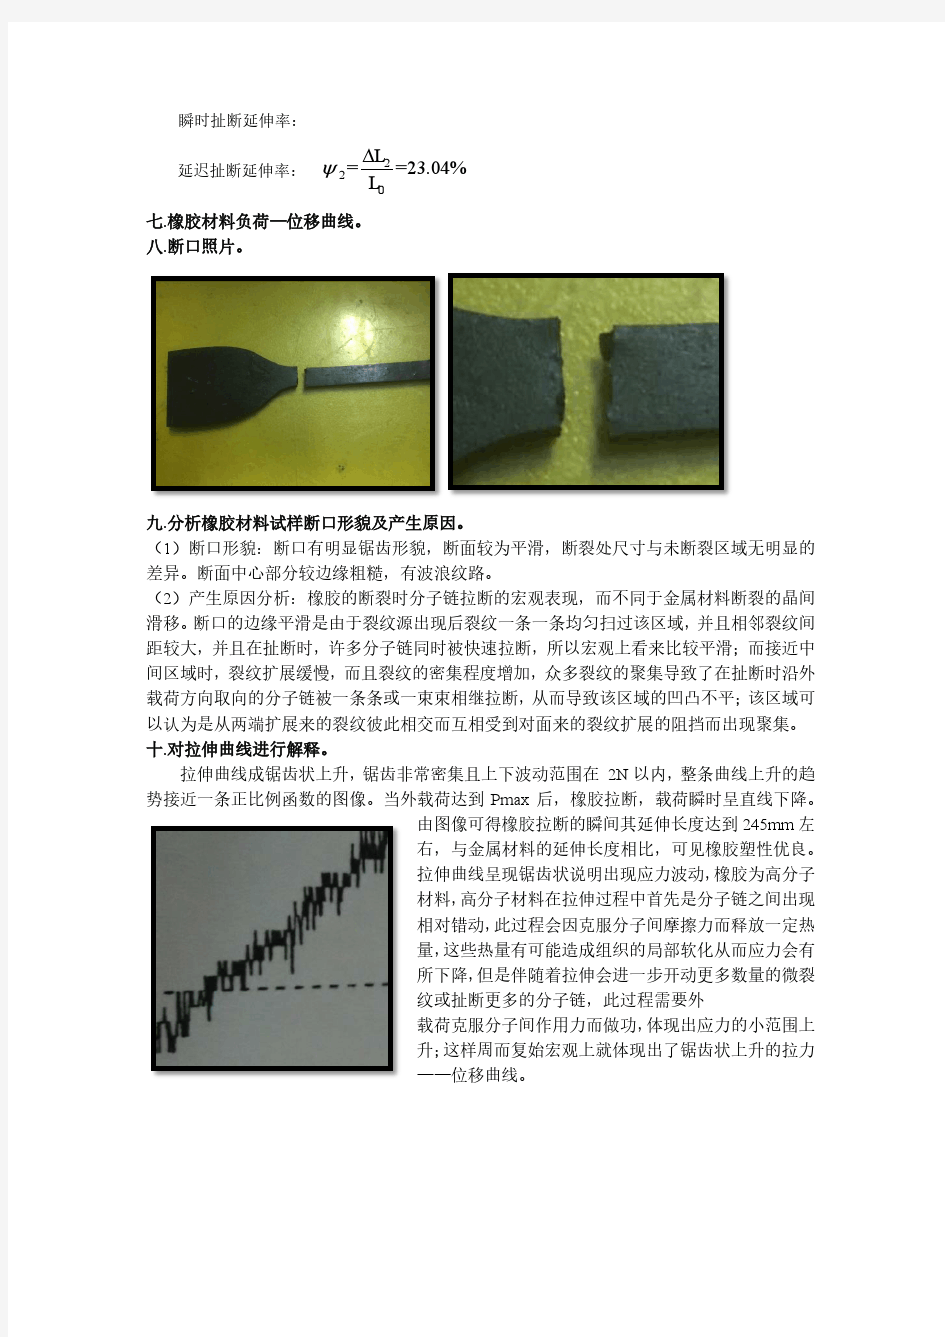 橡胶材料力学性能指标的测定